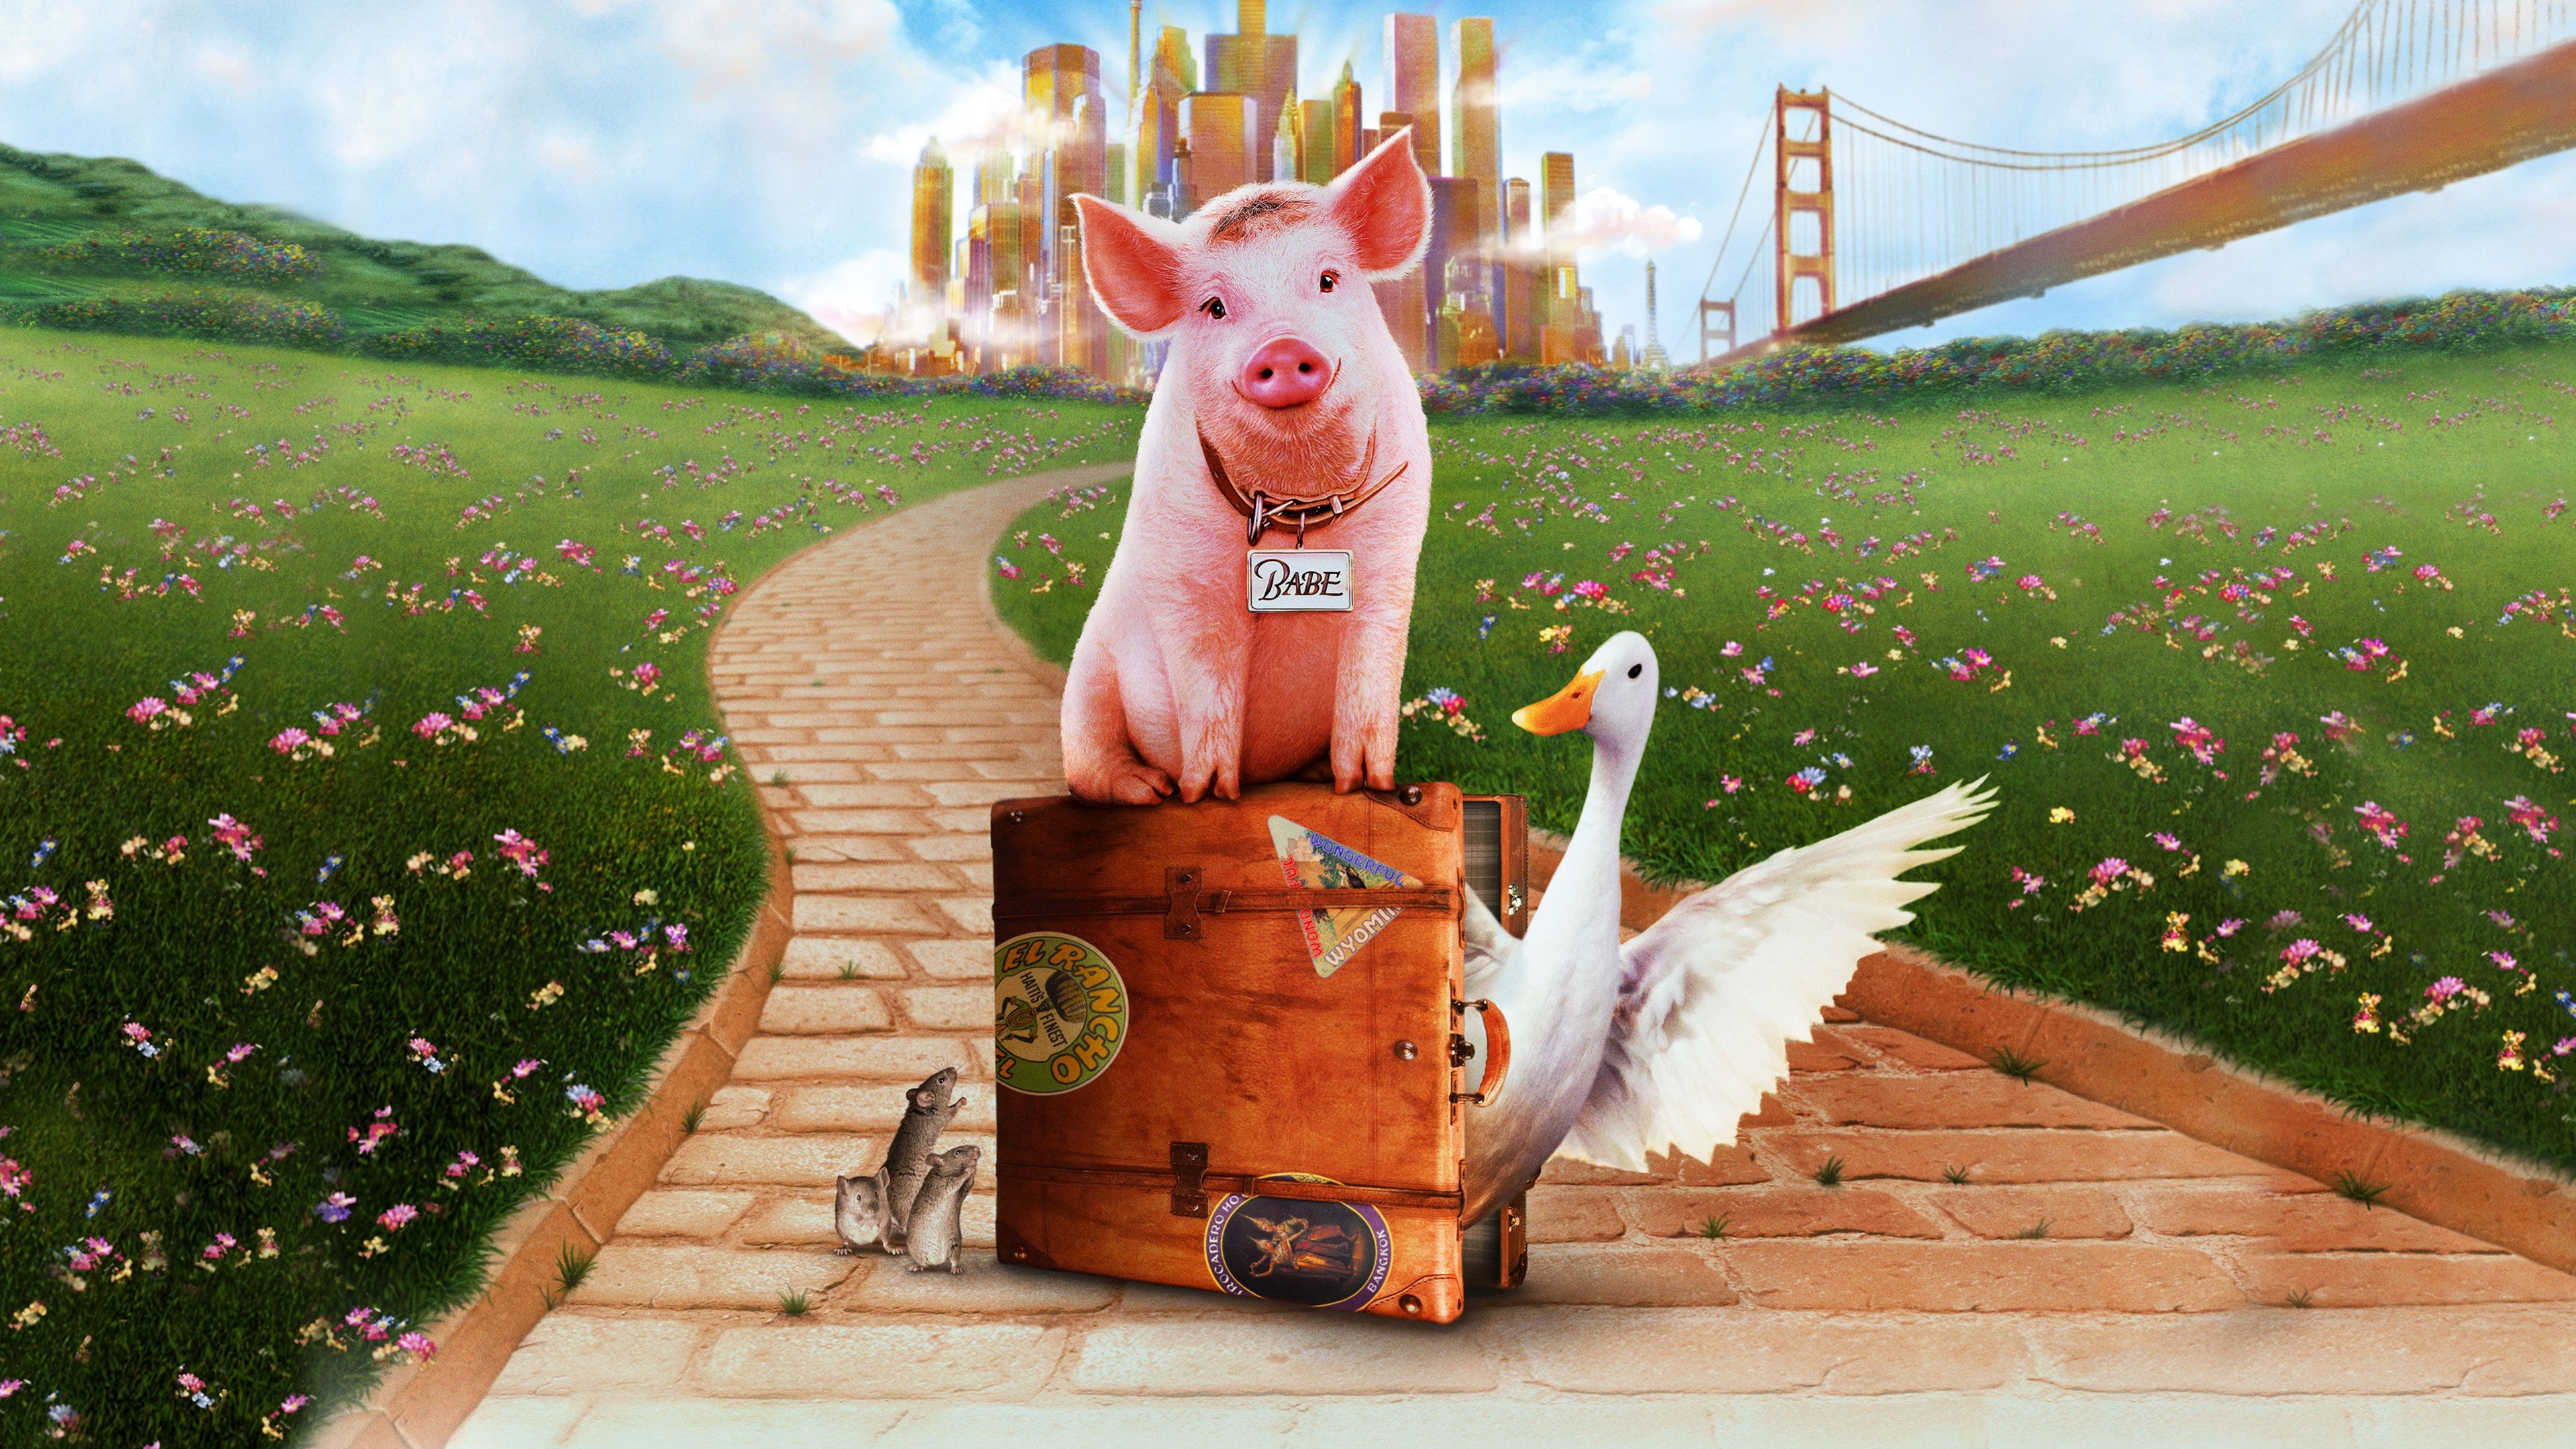 Pig in movies, Babe piggy, Urban adventure, Movie-inspired pig wallpaper, 3840x2160 4K Desktop